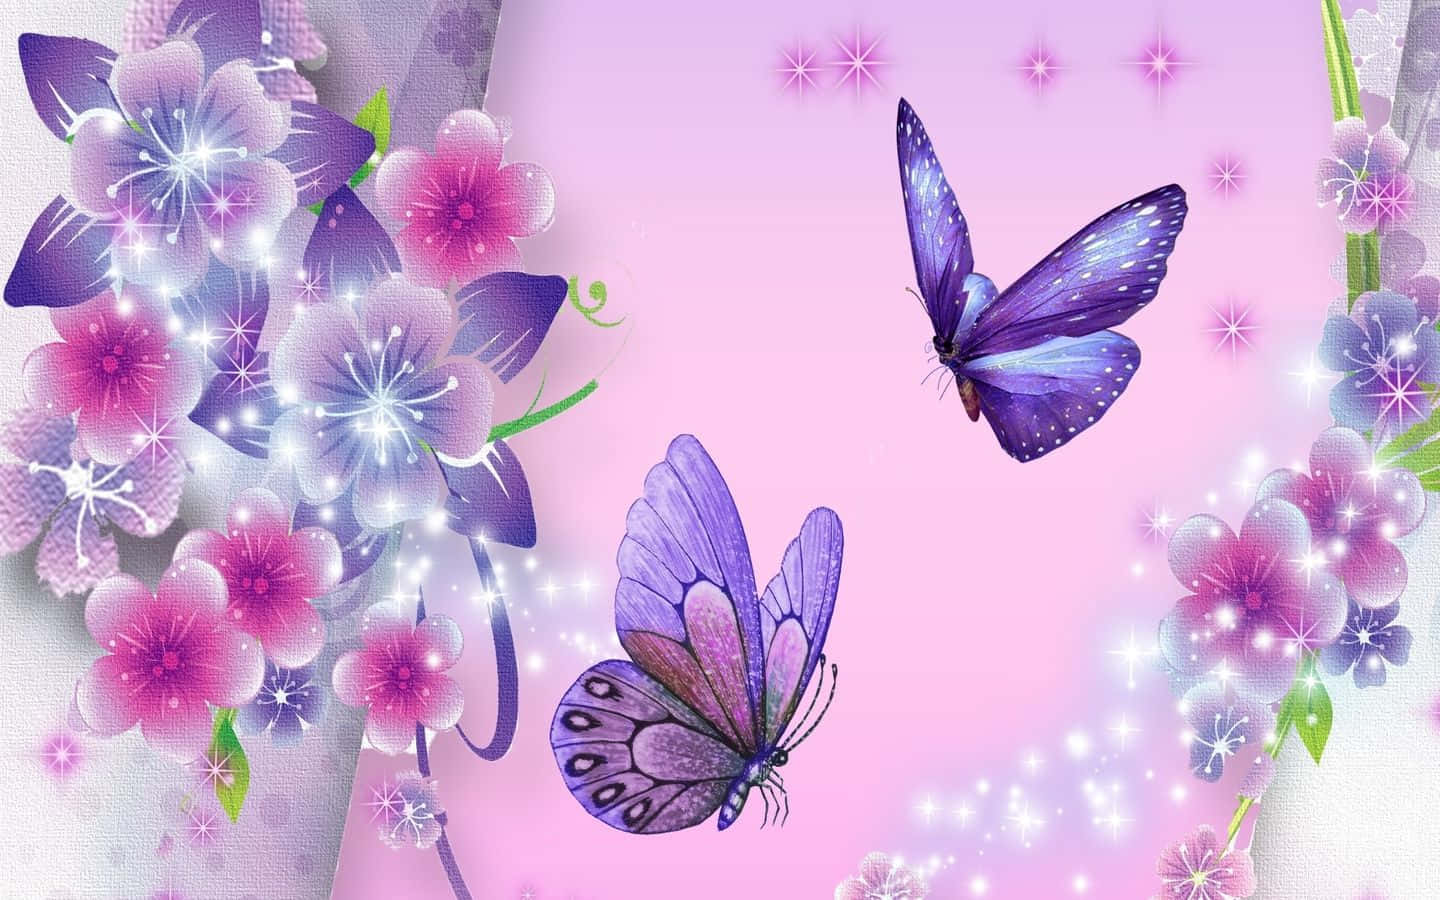 Tvåfjärilar Flyger Genom Luften På En Rosa Bakgrund.